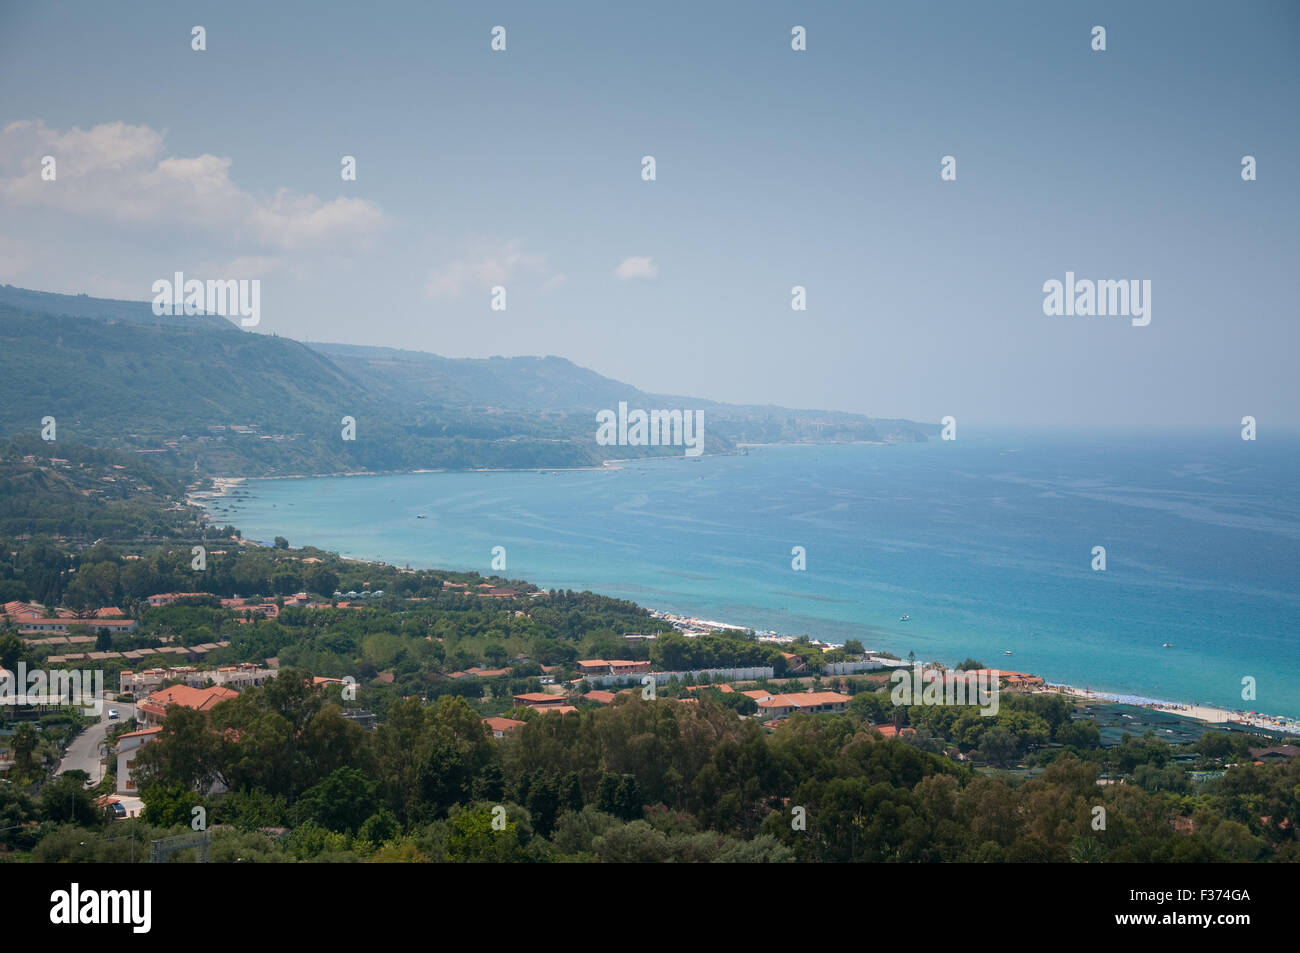 View of the marina of Nicotera, Calabria, Italy Stock Photo